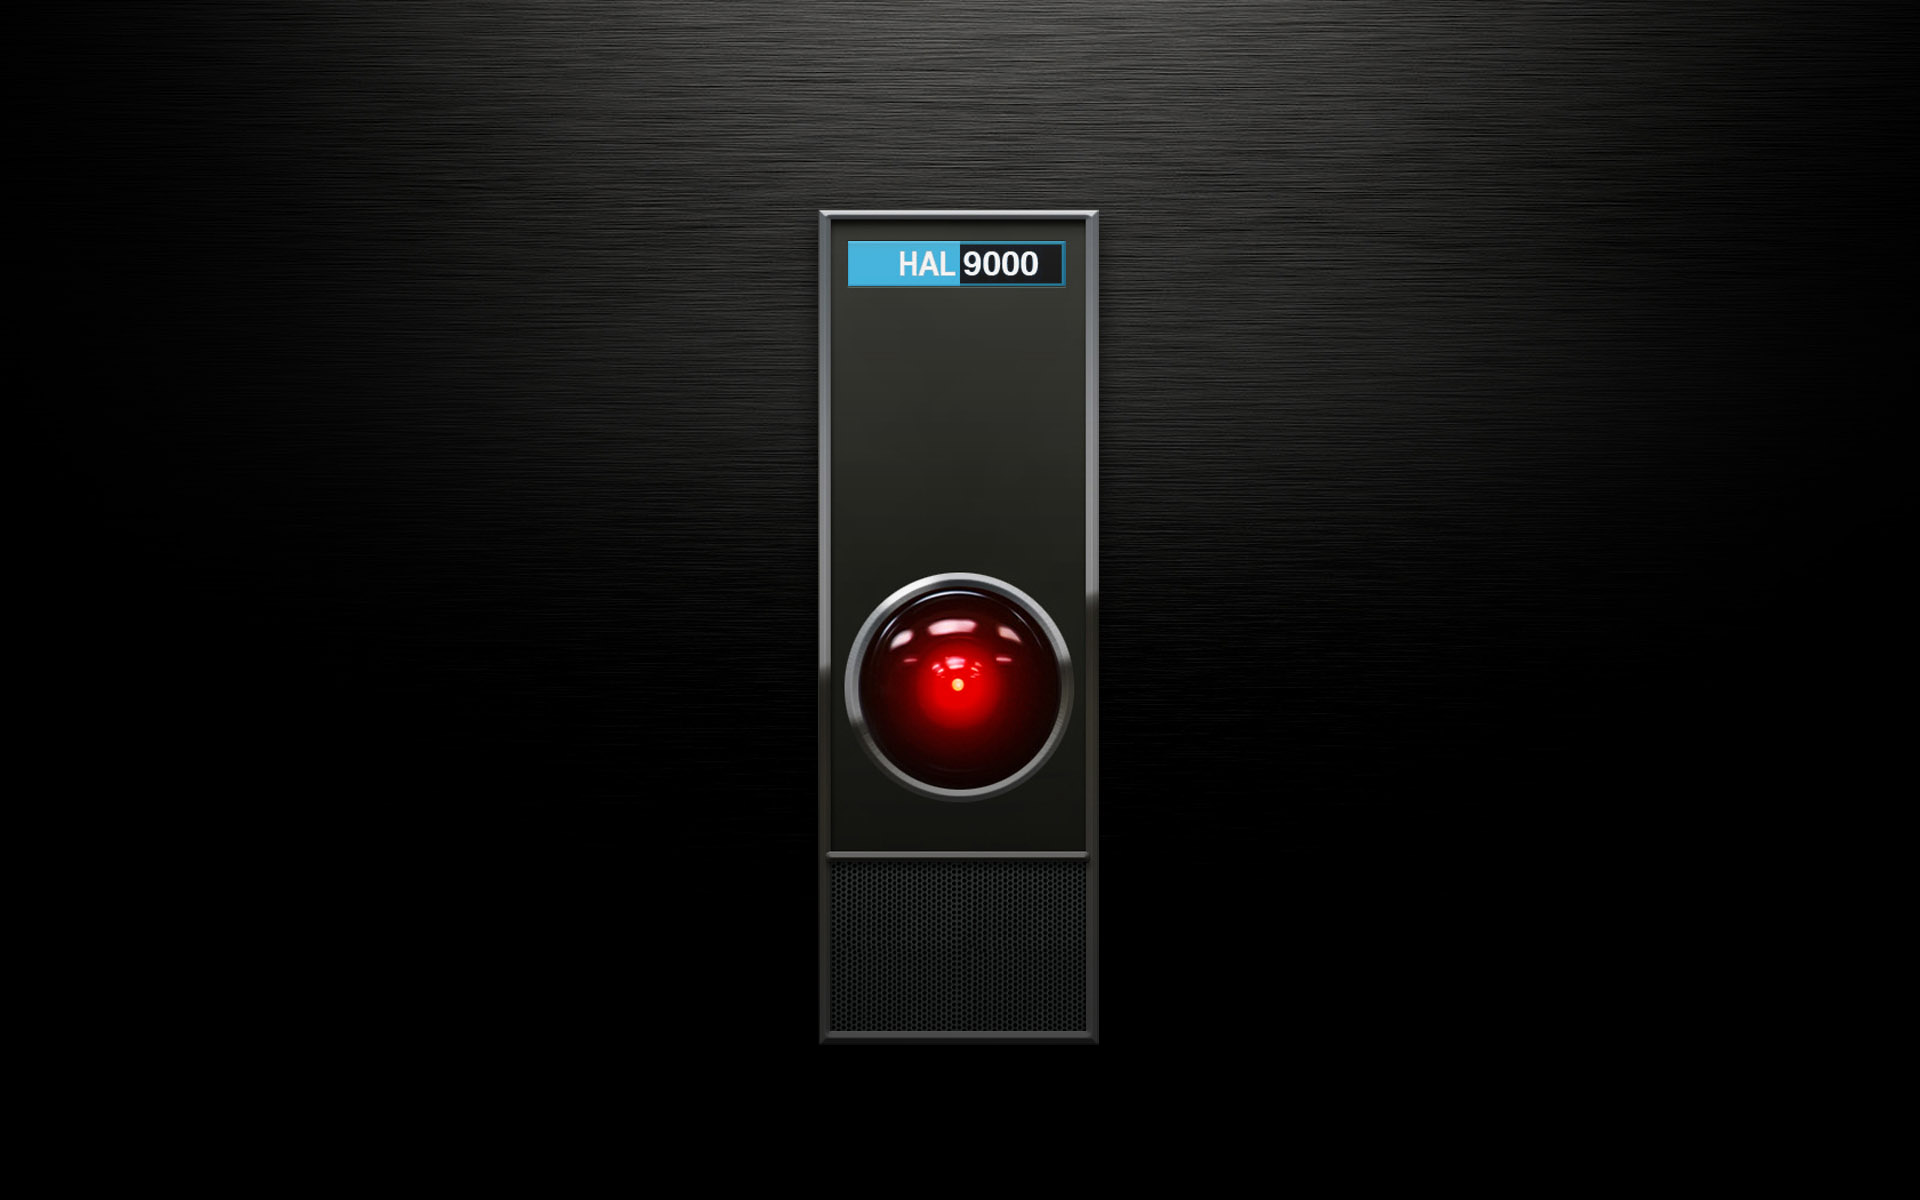 Hãy ngắm nhìn hình nền HAL9000 độc đáo này để cảm nhận sự nghệ thuật đến từ tài năng thiết kế chuyên nghiệp. Với màu sắc và thiết kế tinh tế, nó sẽ là điểm nhấn ấn tượng cho màn hình của bạn.